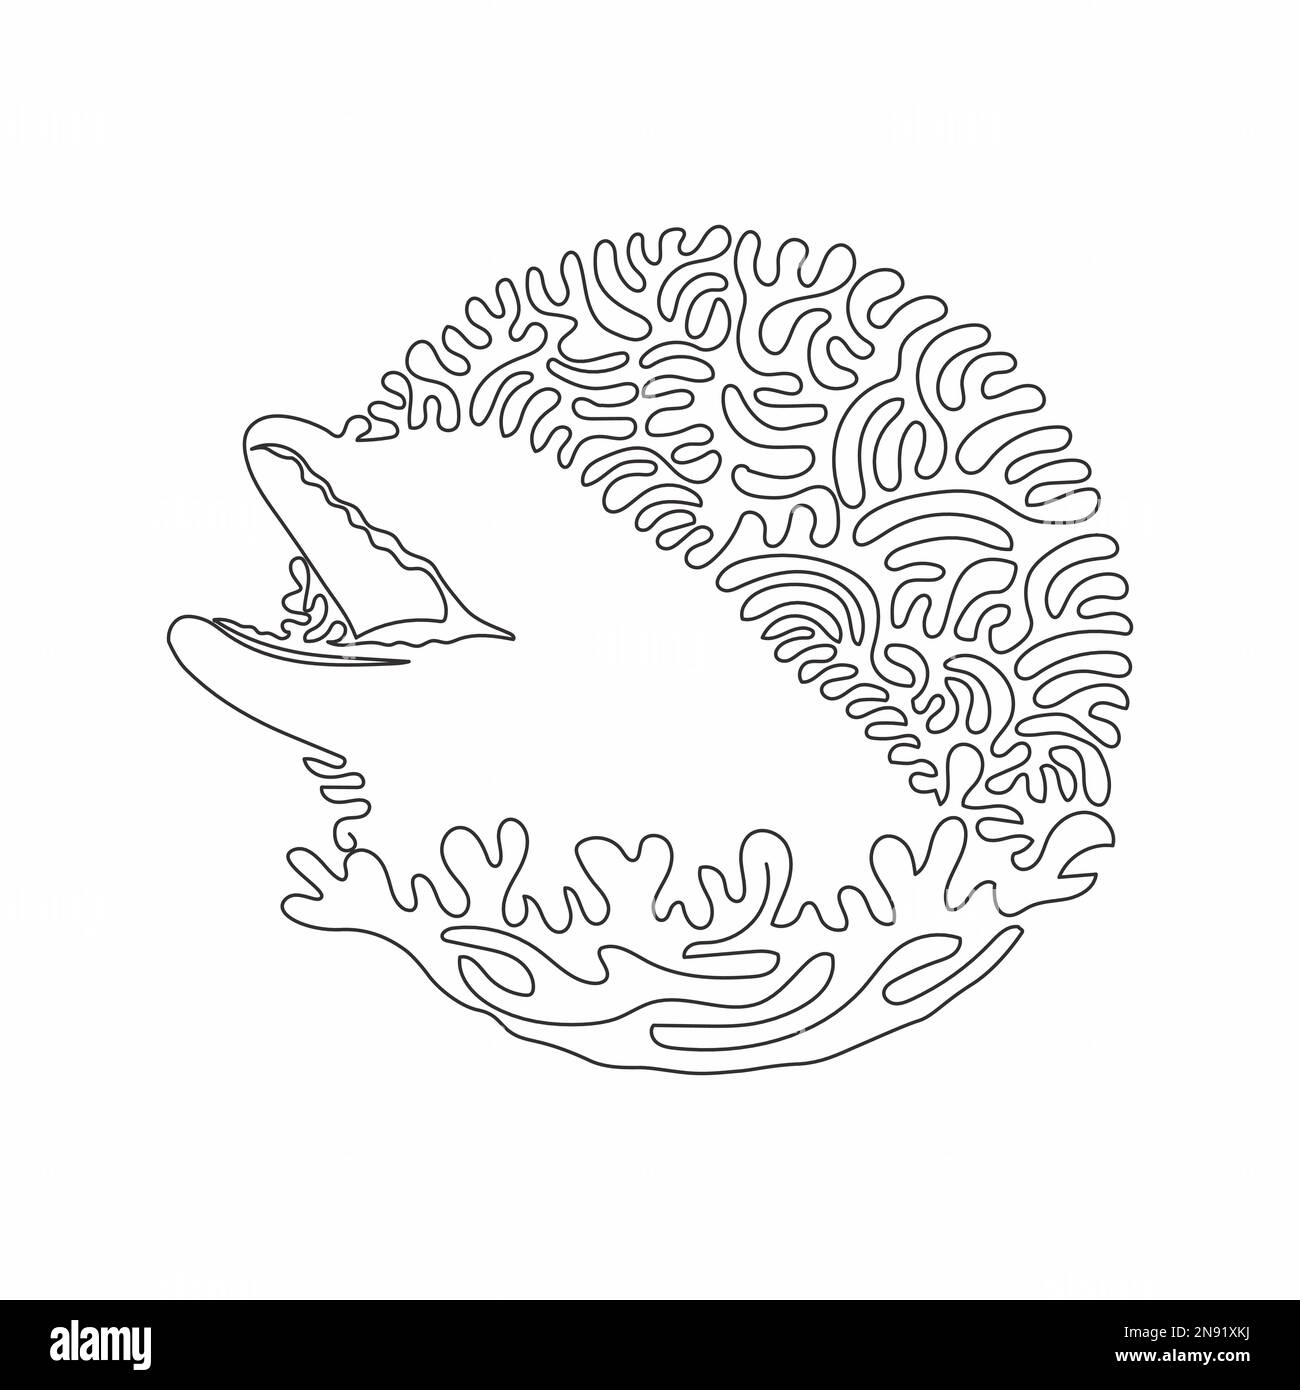 Disegno continuo di una linea curva di divertente arte astratta del delfino in cerchio. Illustrazione del vettore di tratto modificabile a linea singola della pelle liscia del delfino Illustrazione Vettoriale